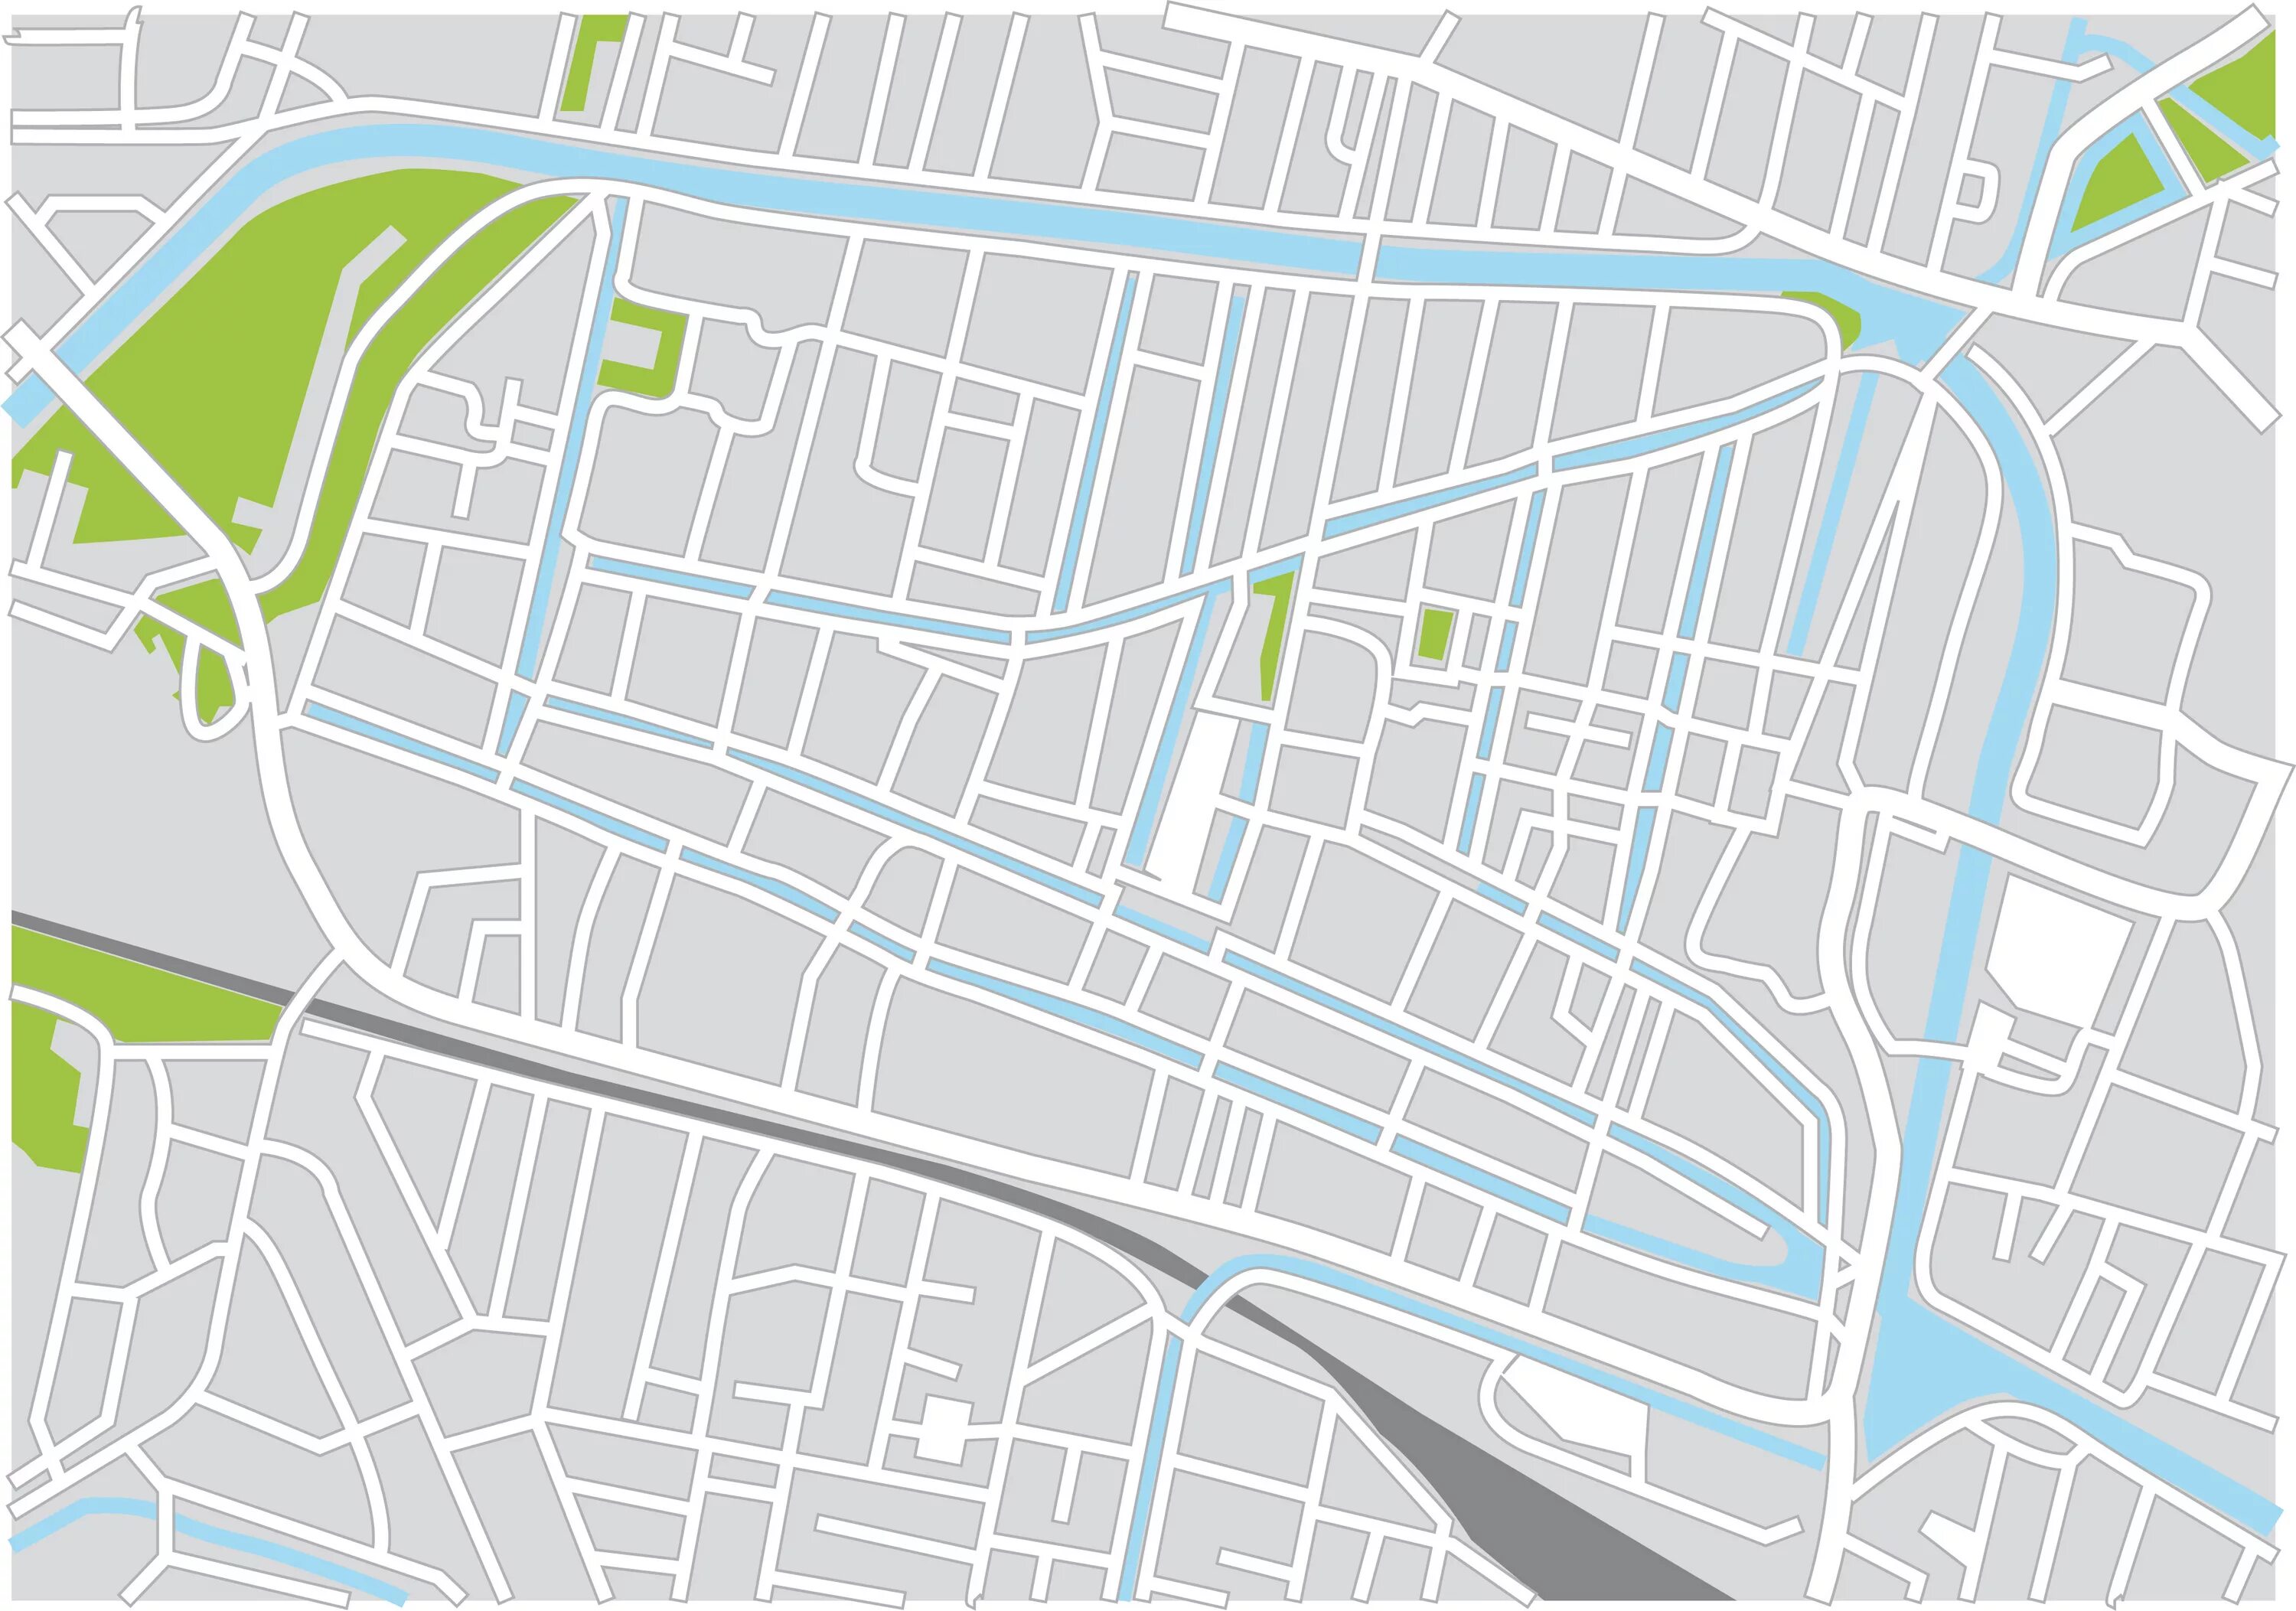 Карта города. Векторная карта города. Карта города вектор. Карта города без названия улиц.